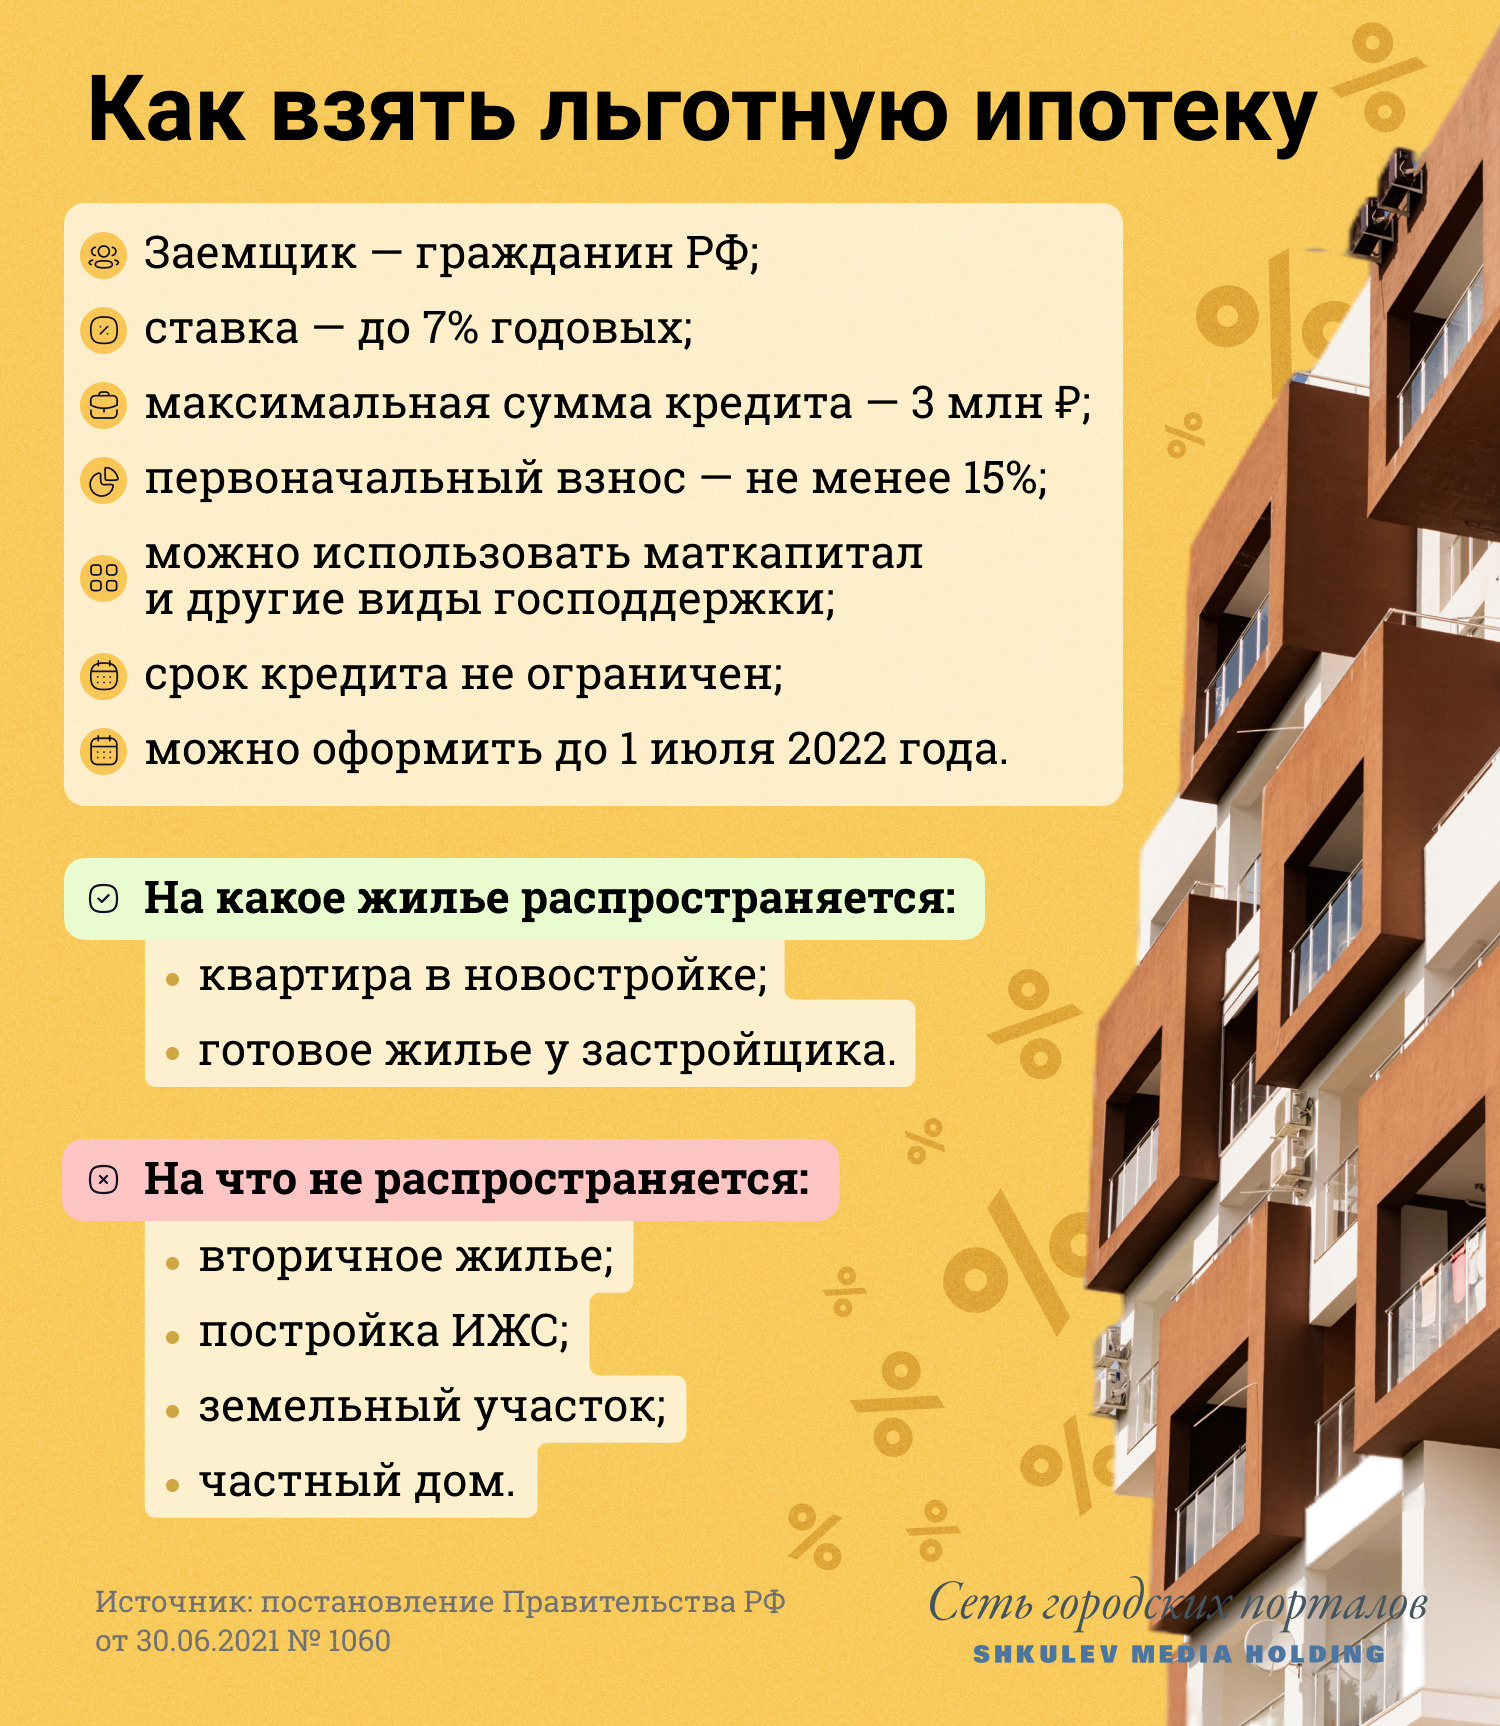 Льготная ипотека полагается всем гражданам РФ, вне зависимости от семейного положения